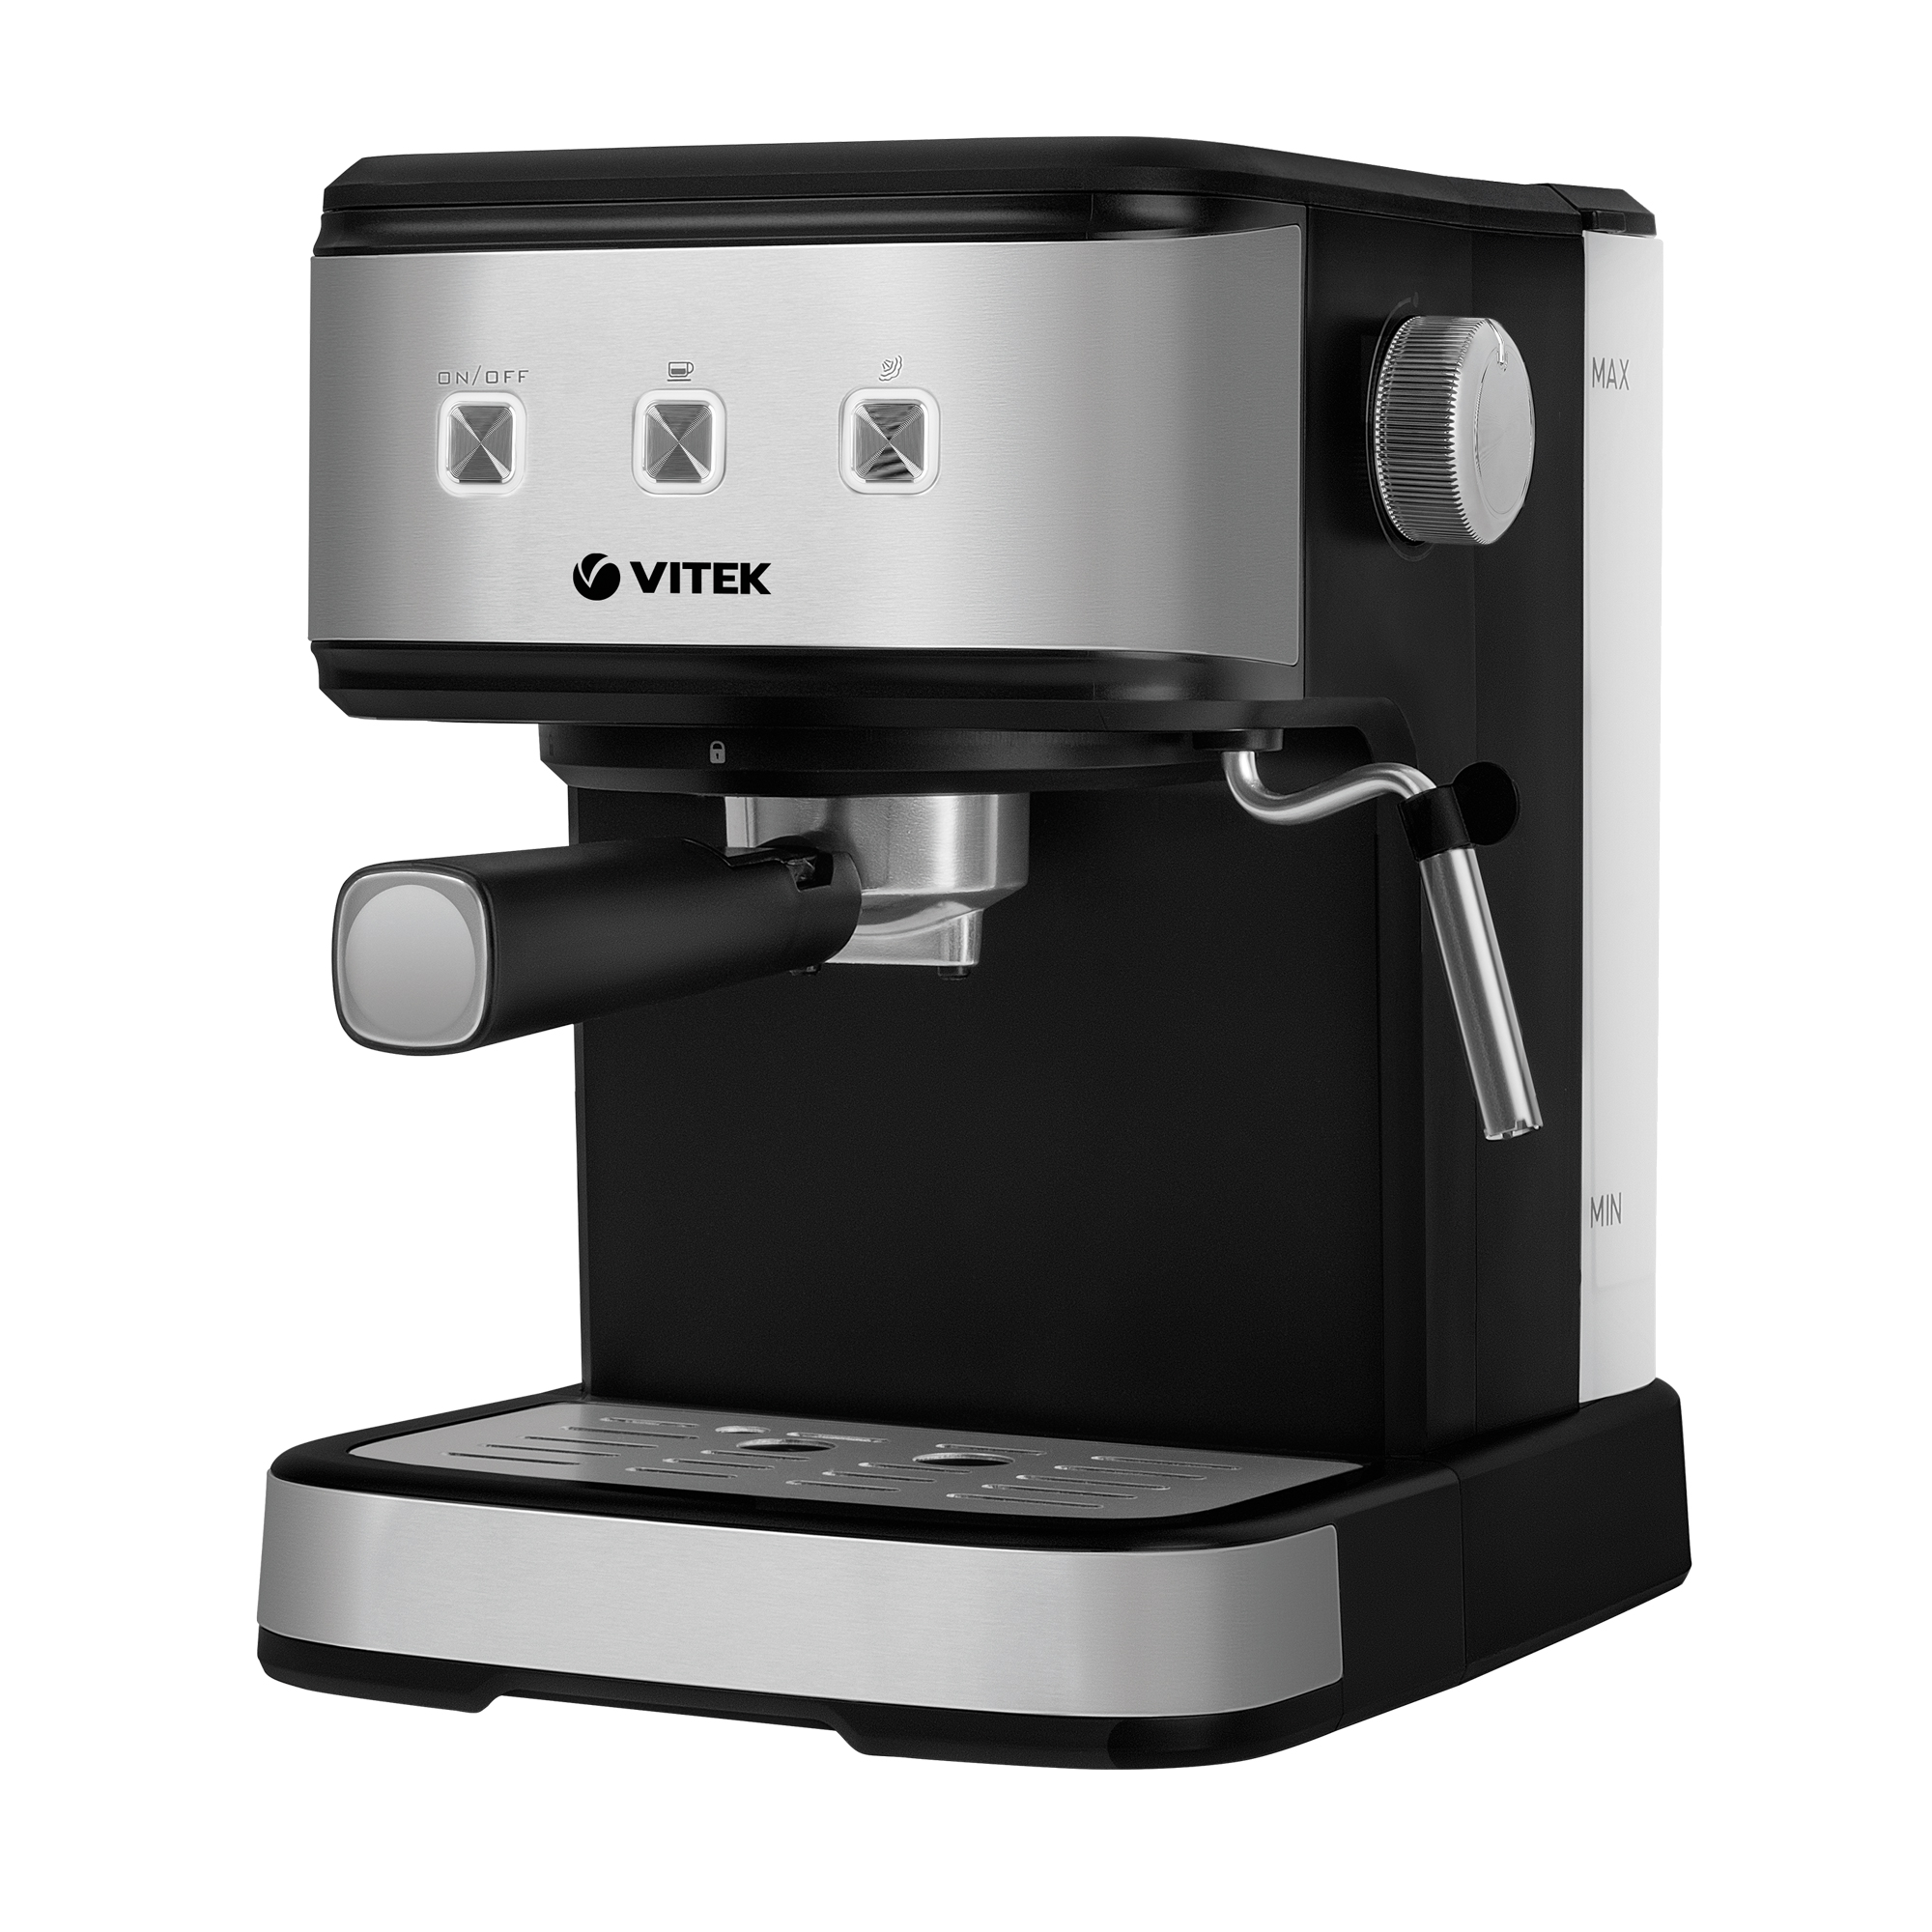 Рожковая кофеварка VITEK VT-8471 серый, черный рожковая кофеварка vitek vt 8471 серый